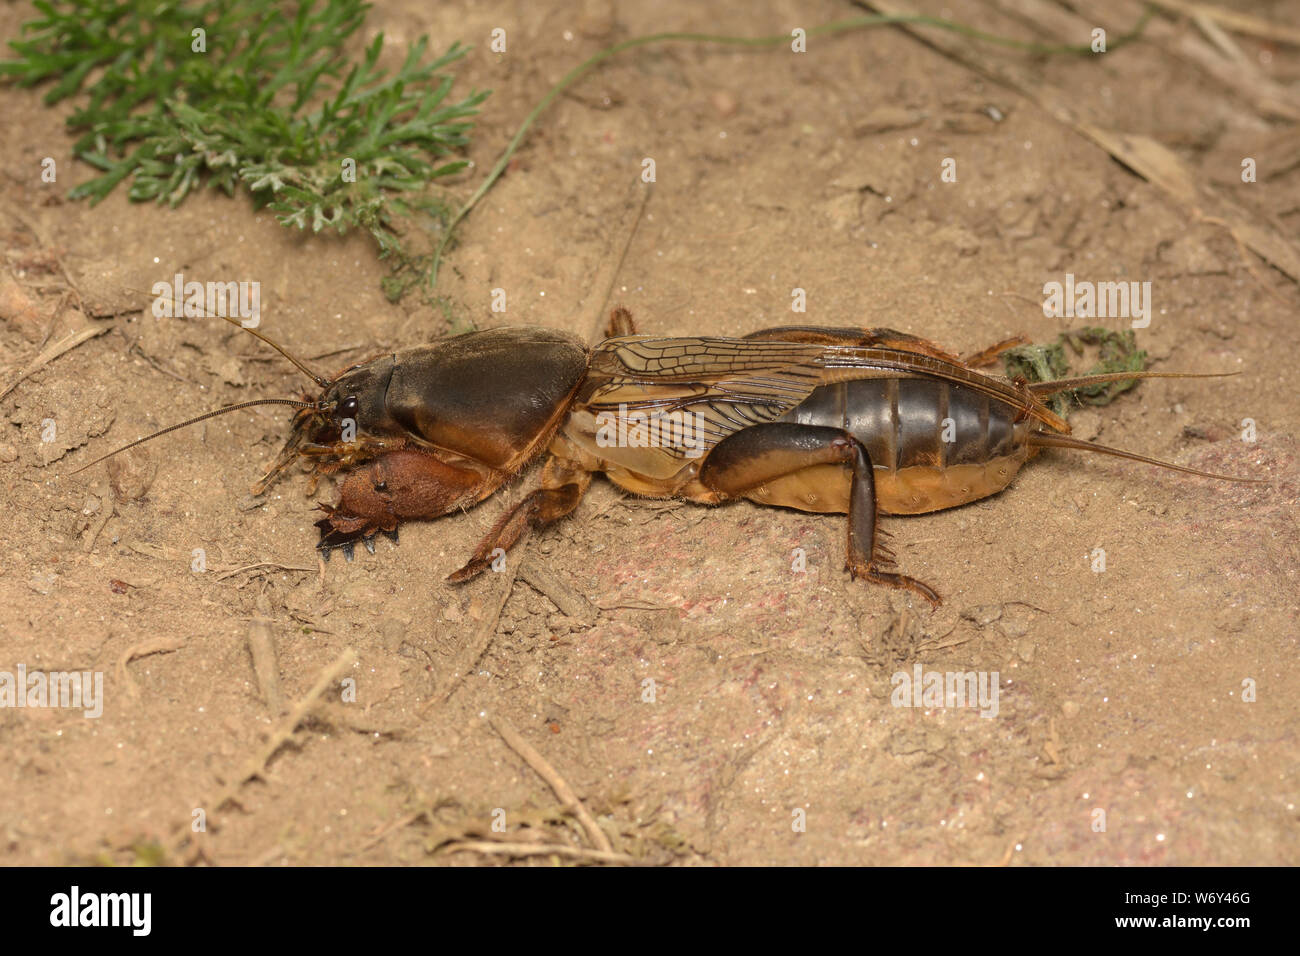 Gryllotalpa gryllotalpa, European mole cricket, Europäische Maulwurfsgrille Stock Photo